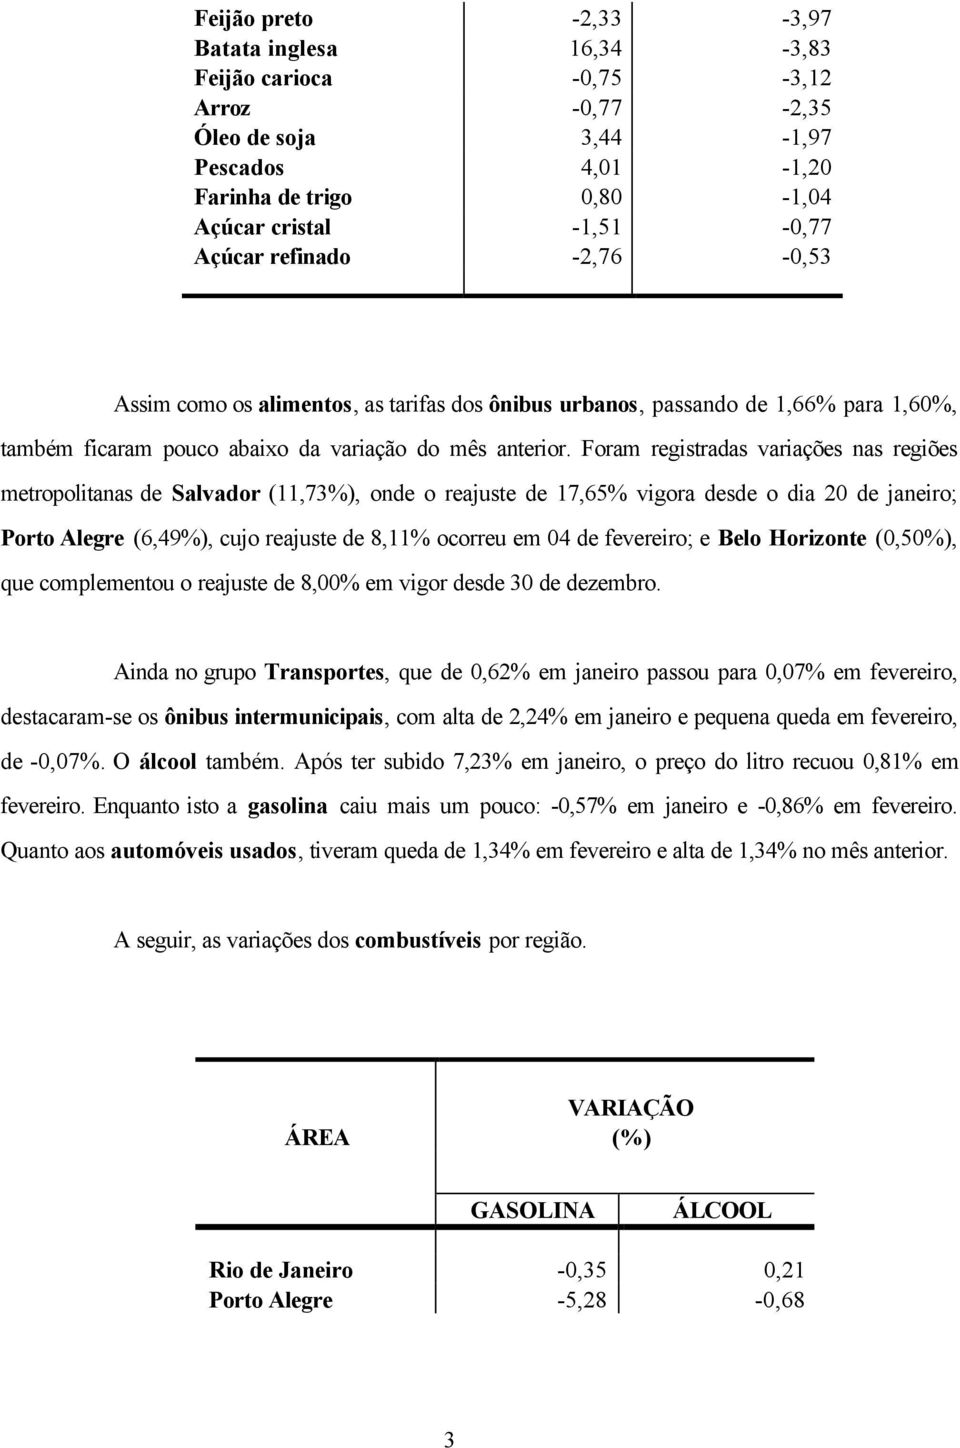 Foram registradas variações nas regiões metropolitanas de Salvador (11,73%), onde o reajuste de 17,65% vigora desde o dia 20 de janeiro; Porto Alegre (6,49%), cujo reajuste de 8,11% ocorreu em 04 de